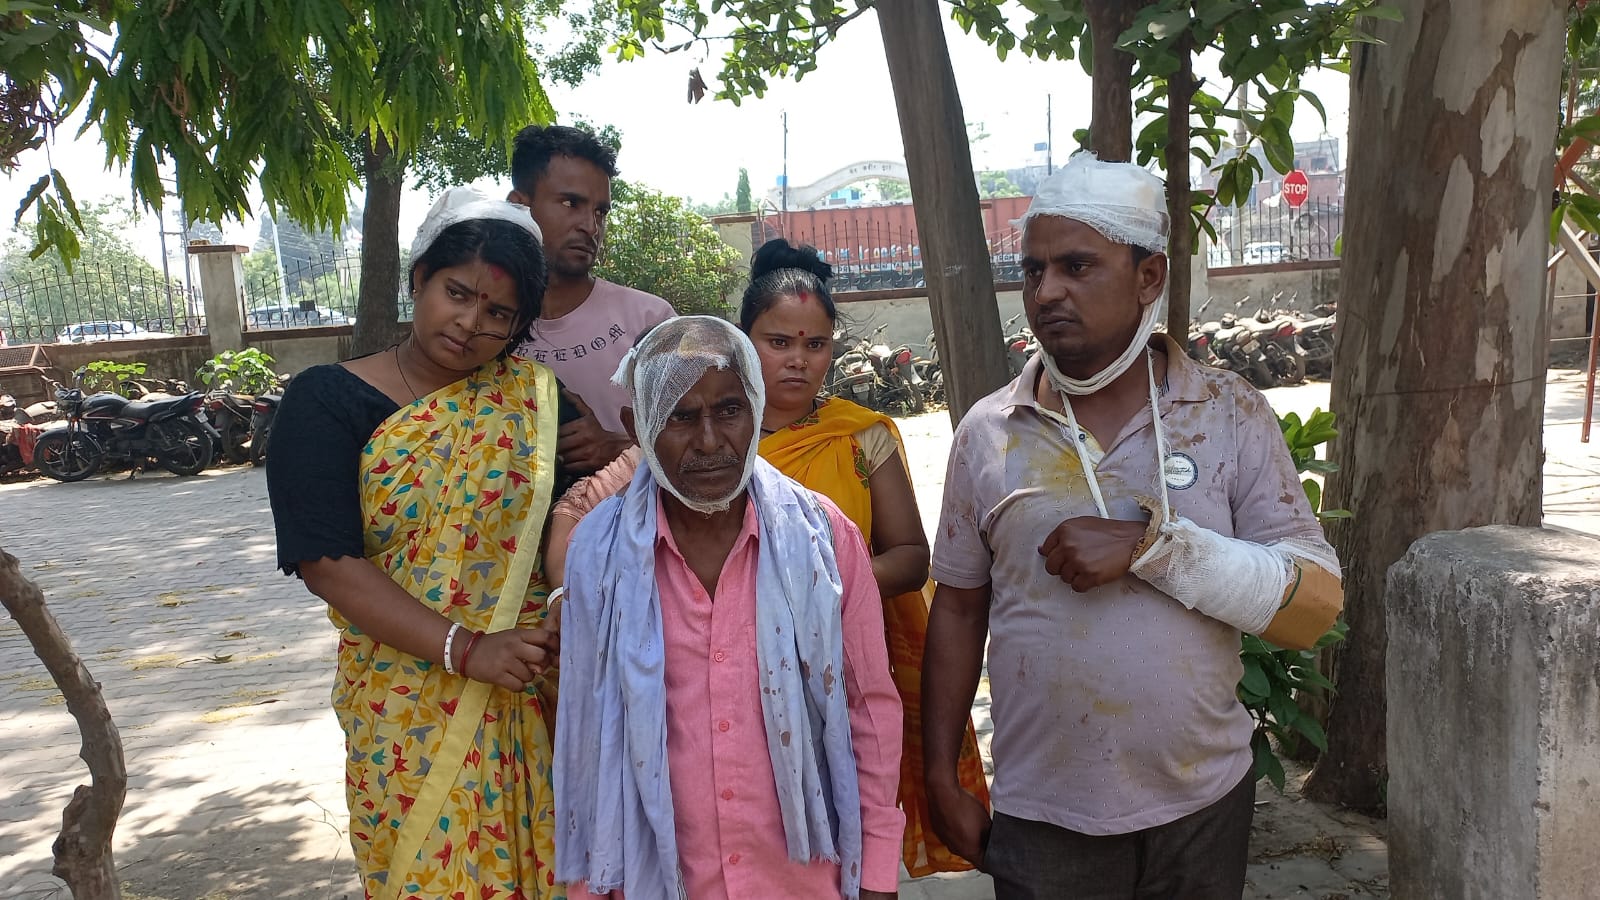 रुद्रपुर: प्रधान की मौजूदगी में परिवार पर जानलेवा हमला